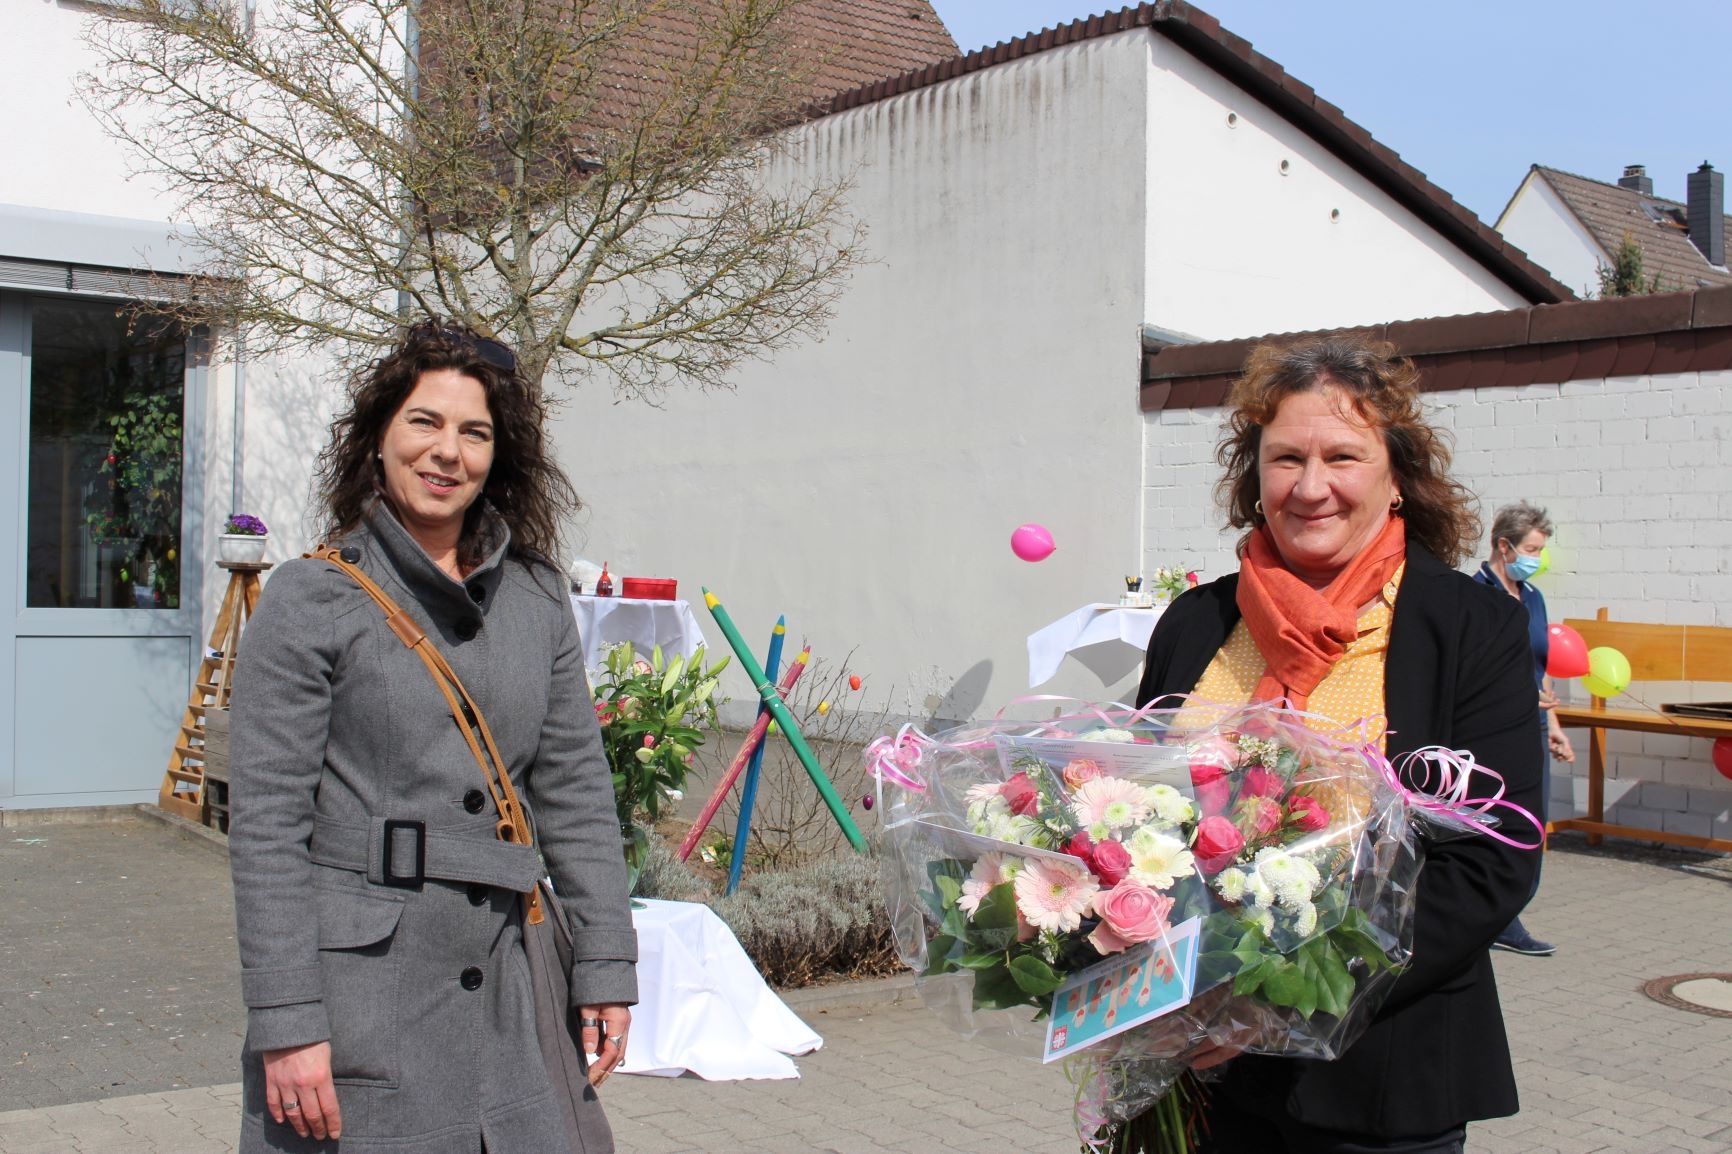 Eine Frau bekommt von einer anderen Frau einen Blumenstrauß. (Caritasverband Darmstadt e. V.)